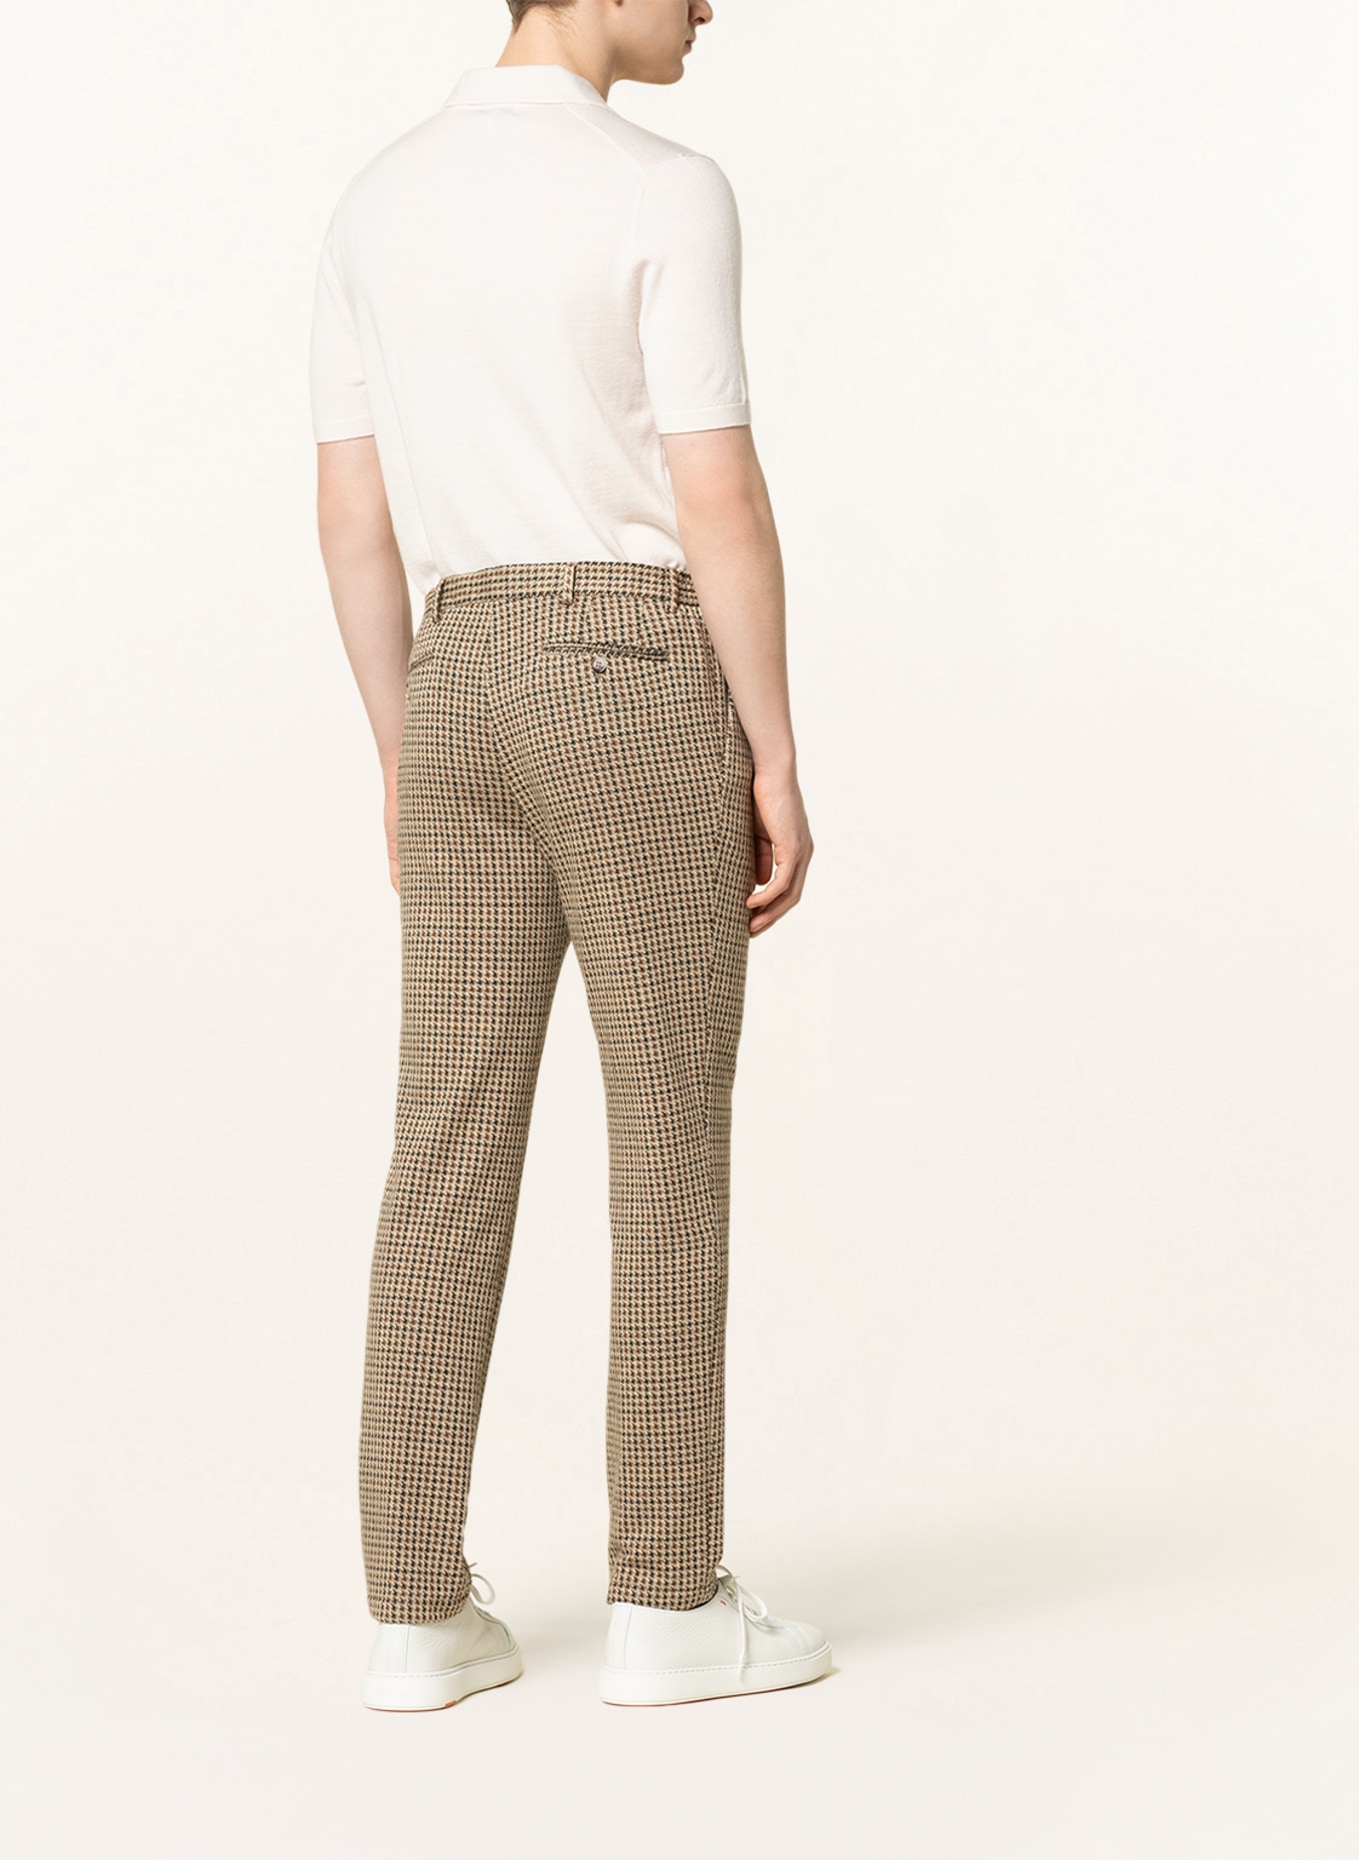 PAUL Suit pants slim fit, Color: 260 Brown (Image 4)